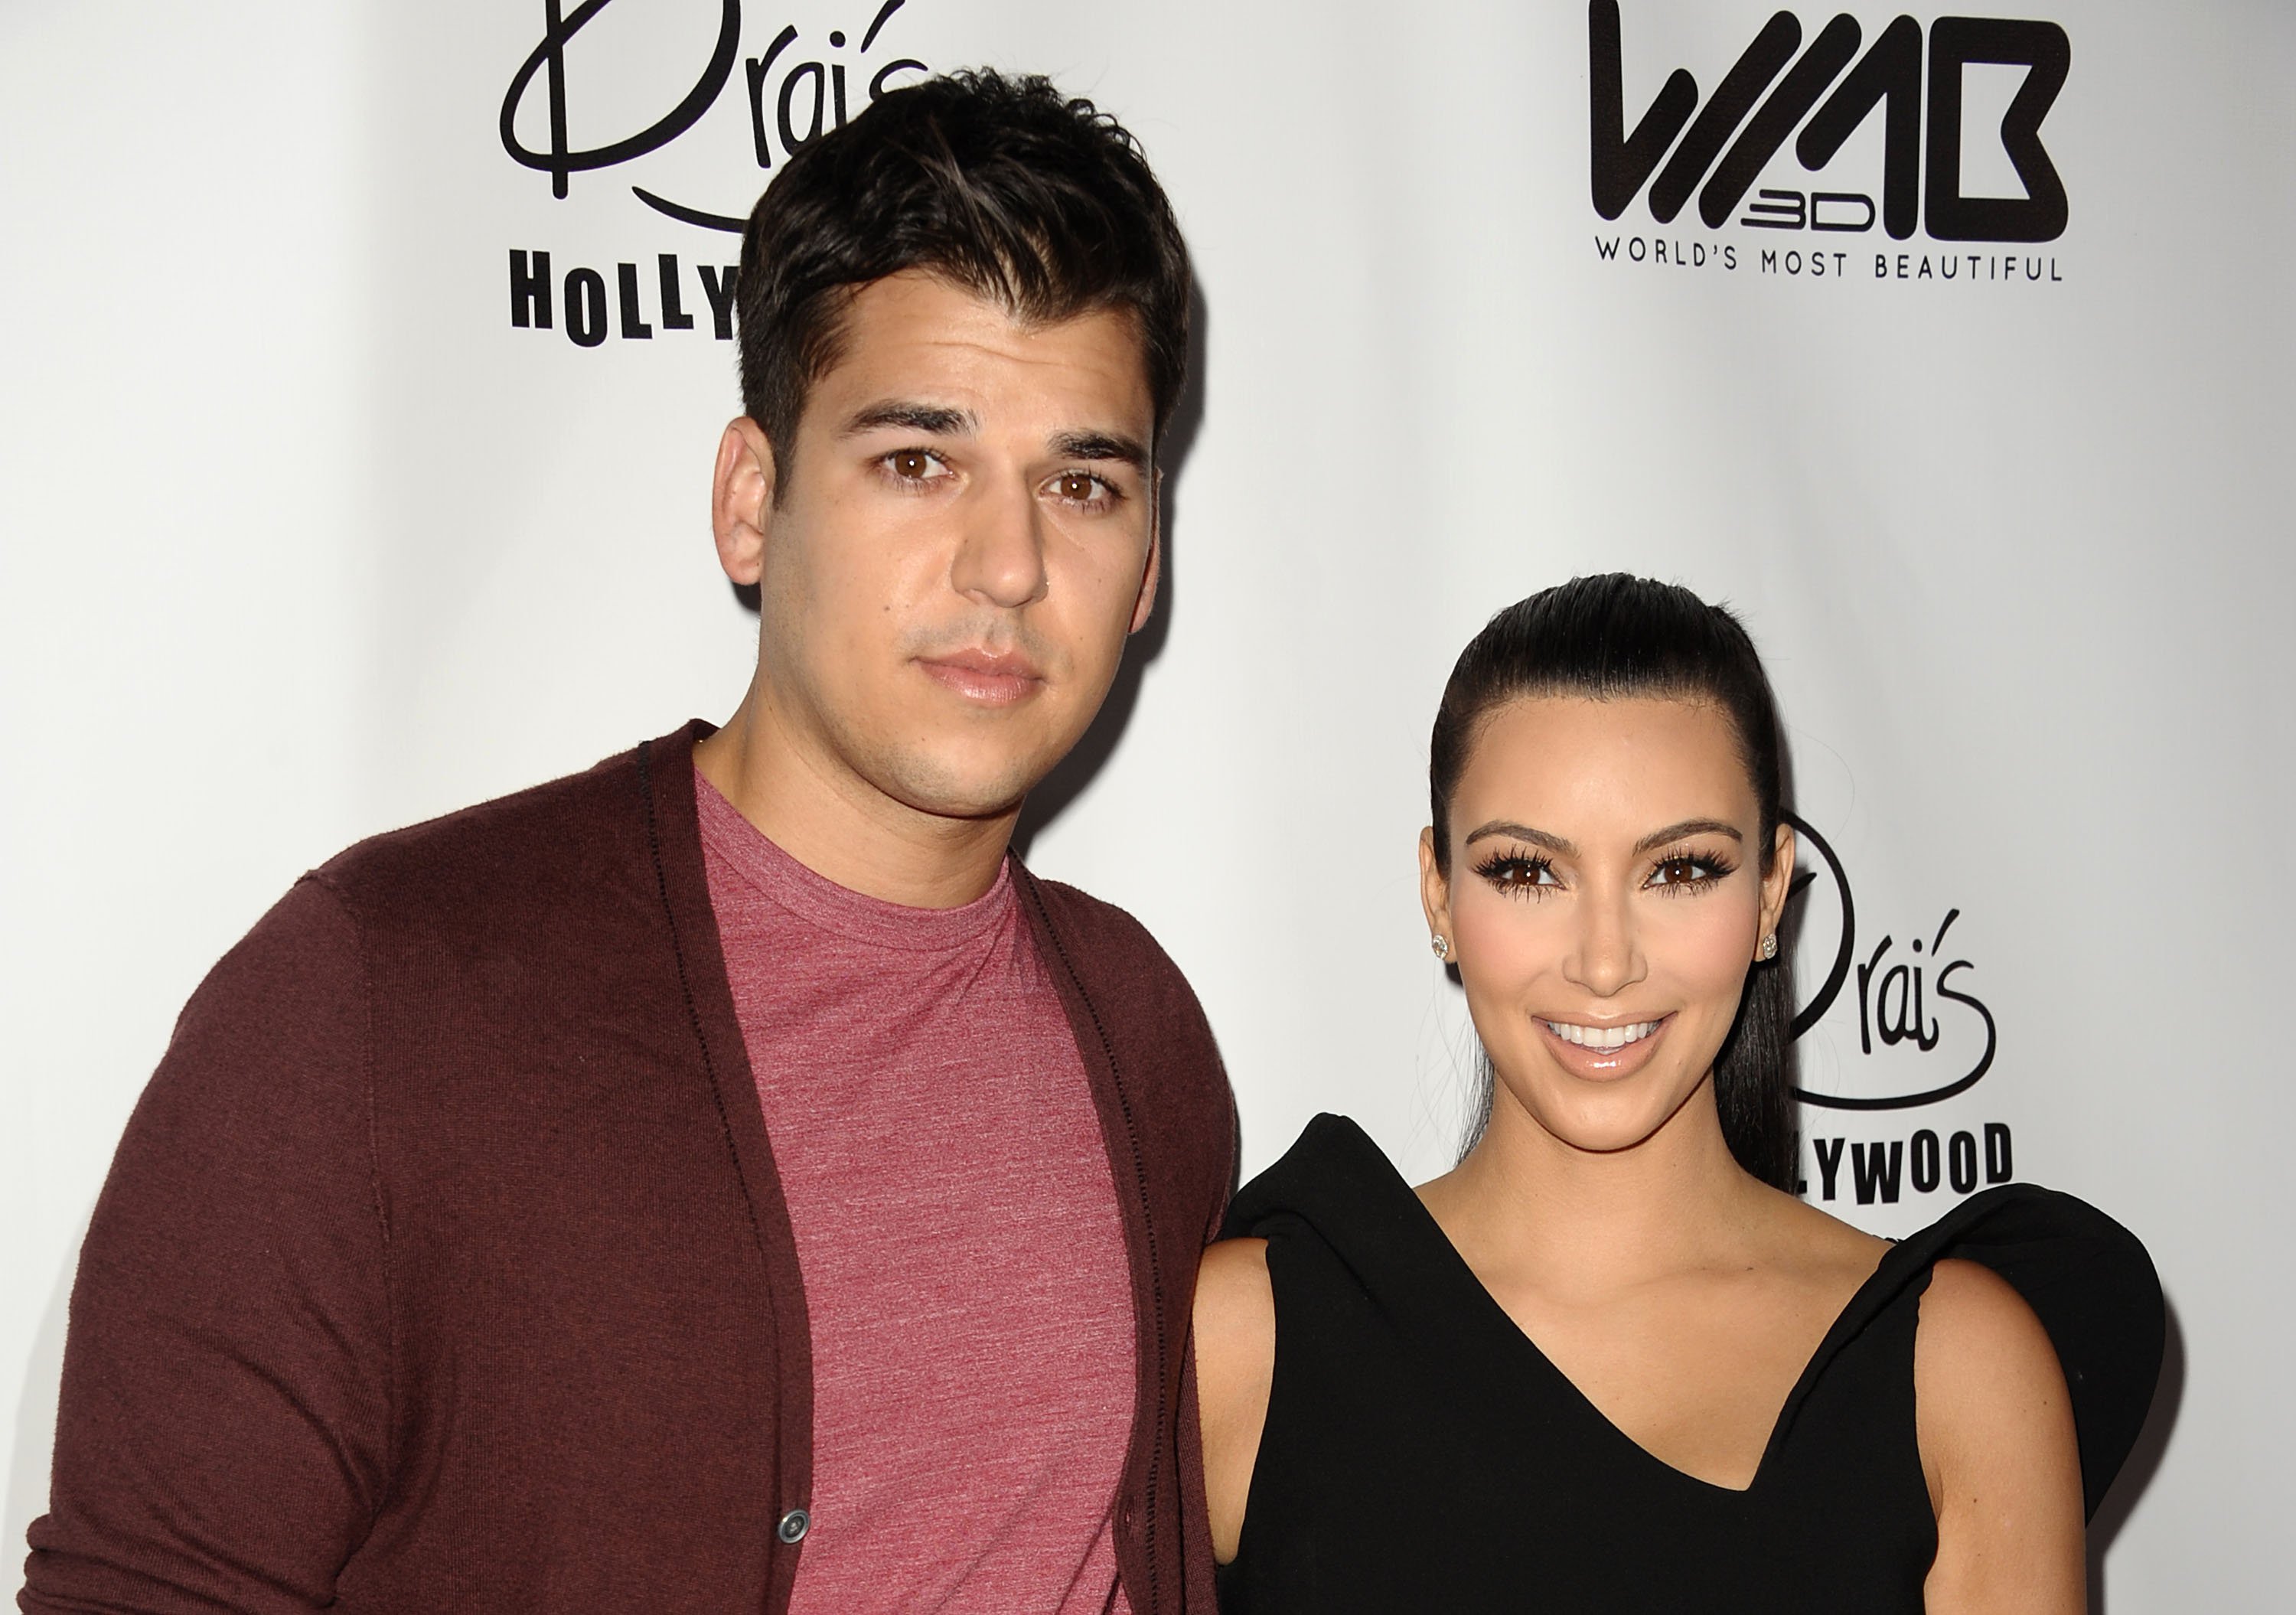 Rob Kardashian and Kanye West's wife, Kim Kardashian West